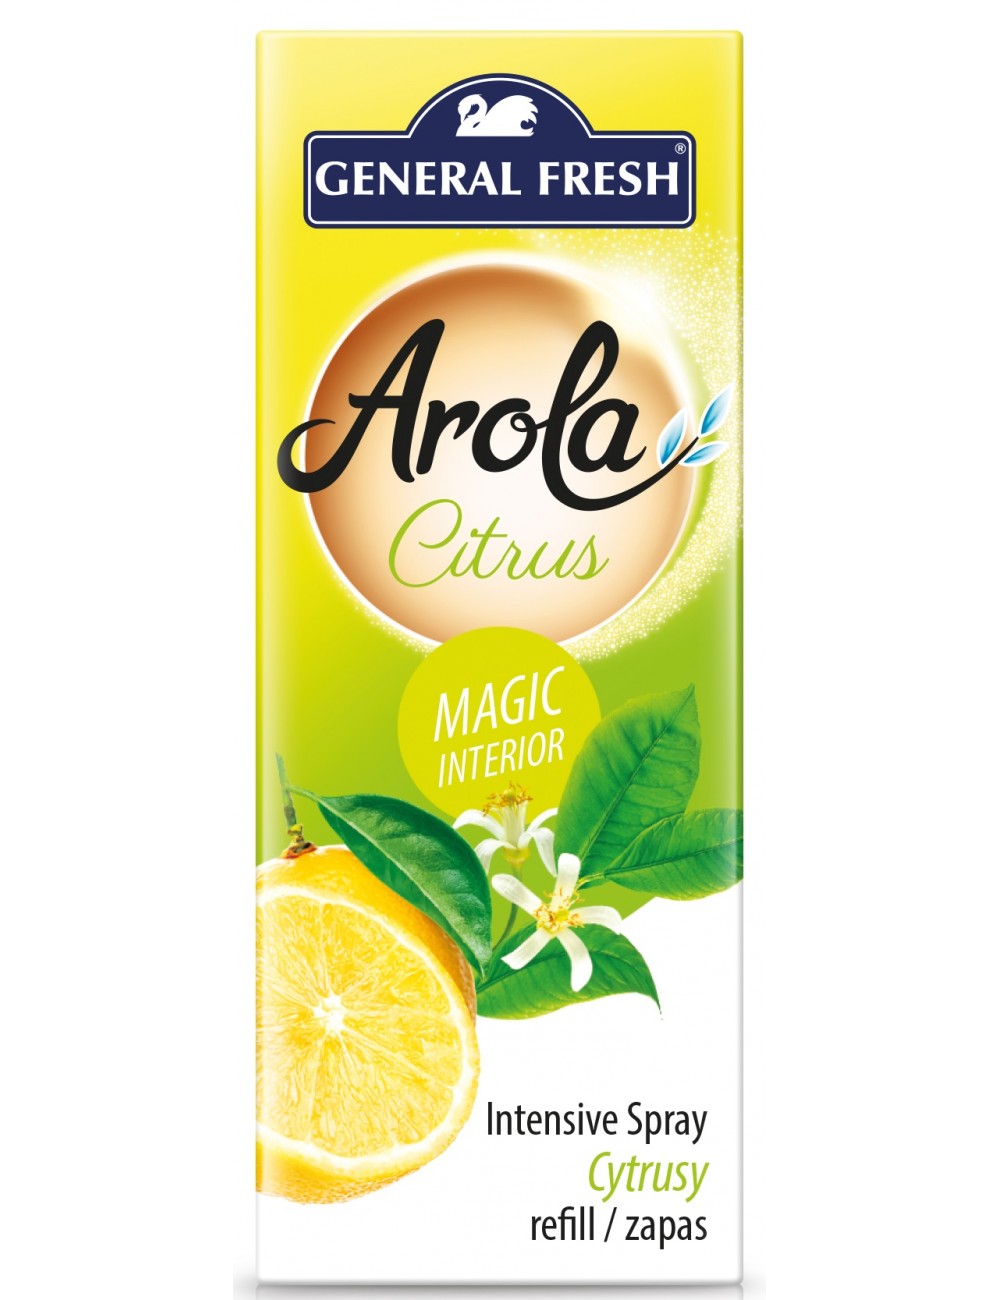 General Fresh Magiczna Szyszka Citrus Zapas 40ml – odświeżacz powietrza o przyjemnym zapachy